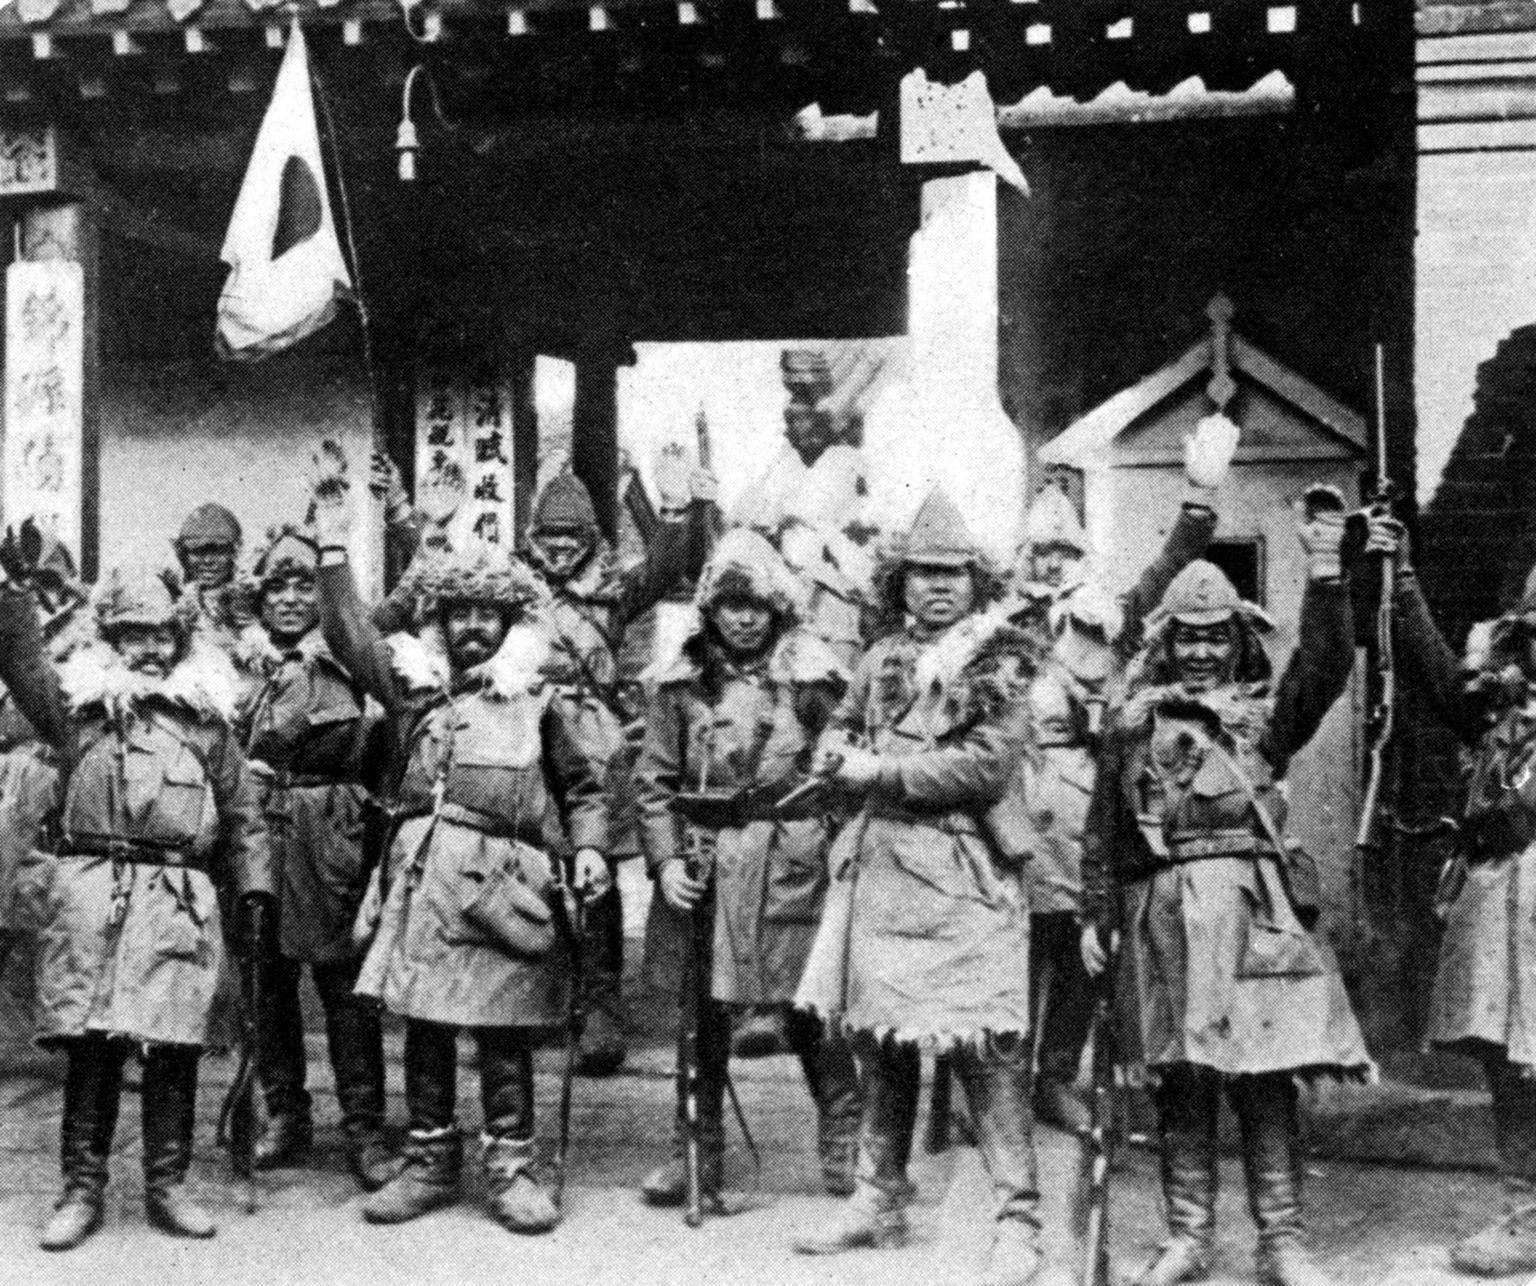 Võiduka ilmega Jaapani sõdurid 1932. aastal Mandžuurias (Mandshukuos).